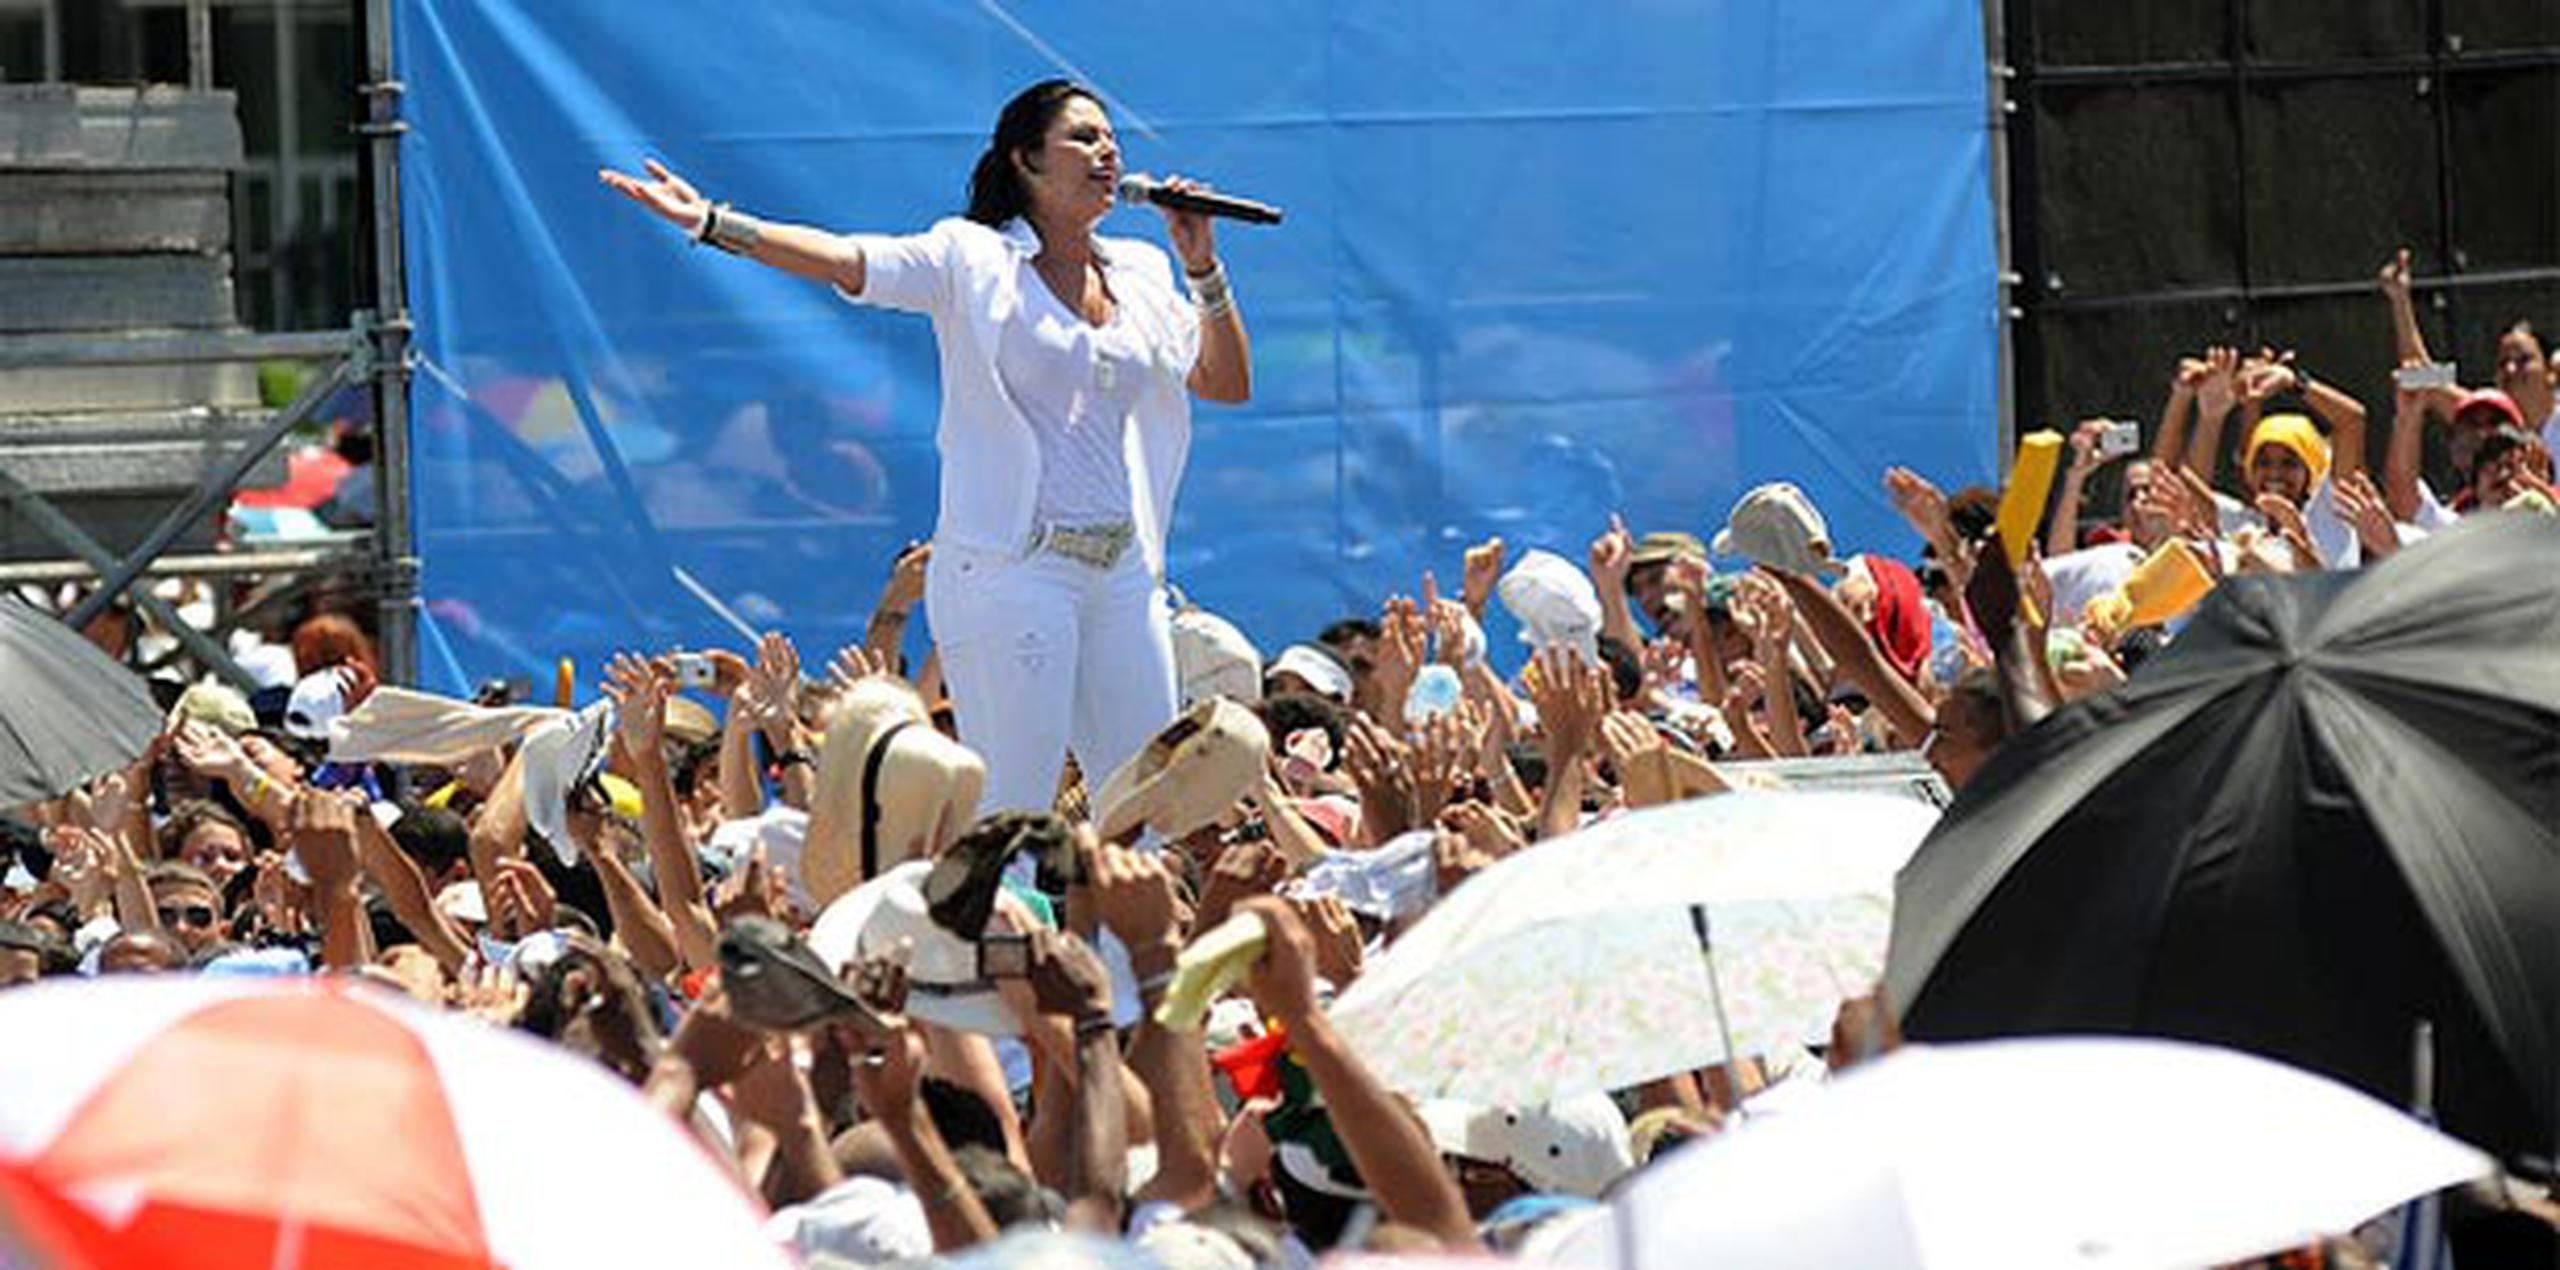 En el 2009, Olga Tañón se presentó en la segunda edición del concierto “Paz sin fronteras” en la Plaza de la Revolución de la Habana, en Cuba. (Archivo)